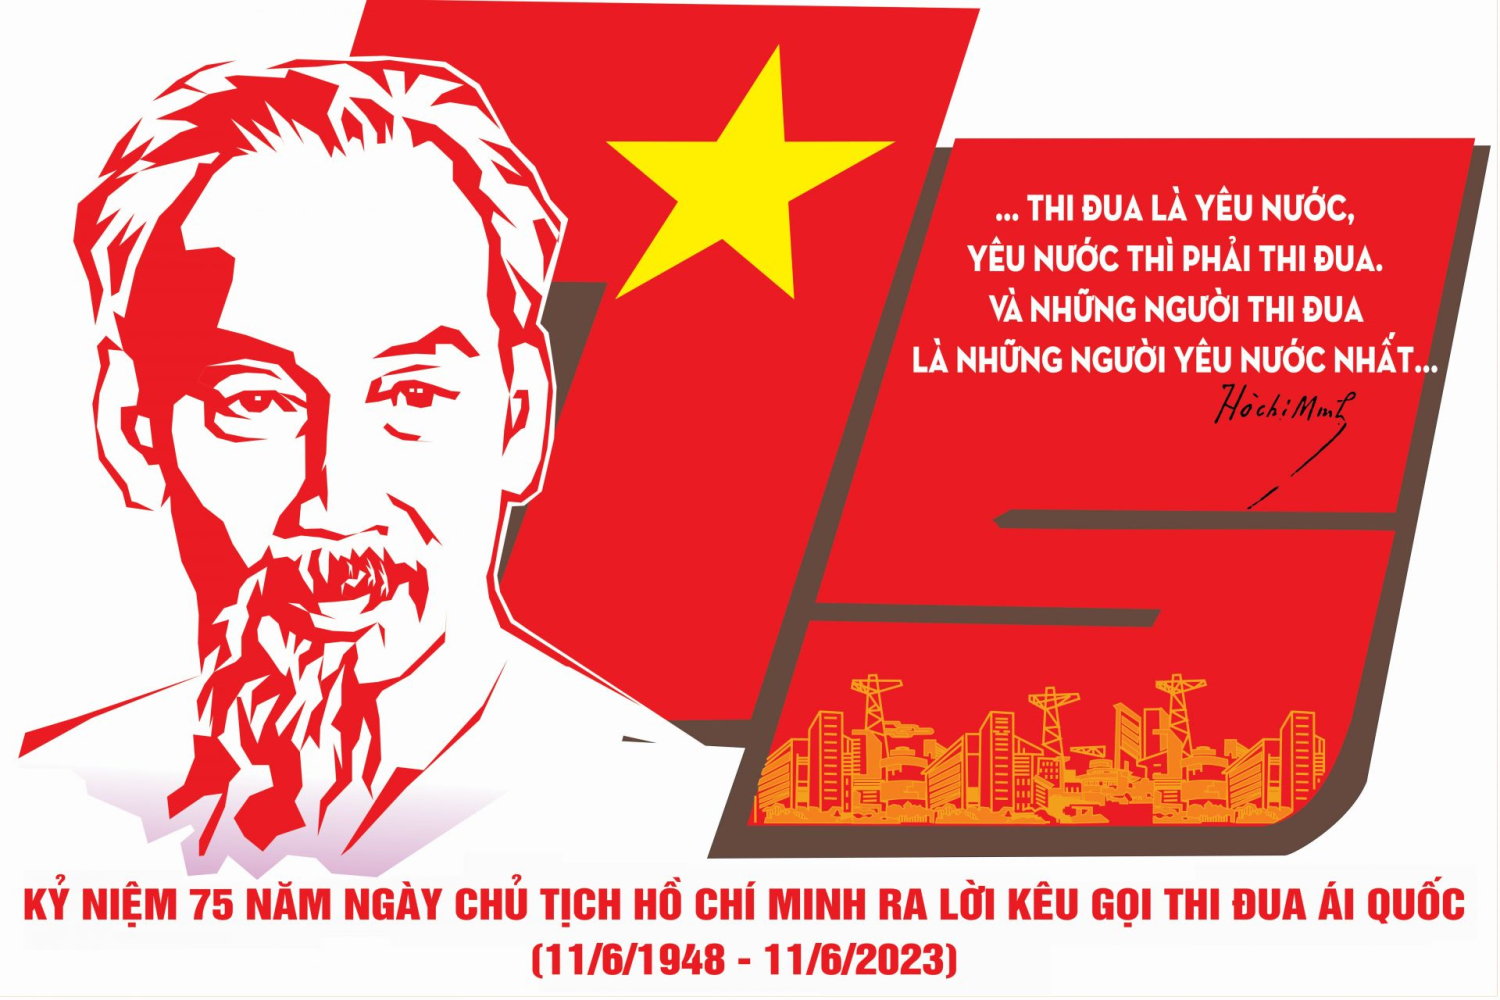 Tư tưởng Hồ Chí Minh về thi đua yêu nước: Dựa vào lực lượng của dân, tinh thần của dân, để gây hạnh phúc cho dân